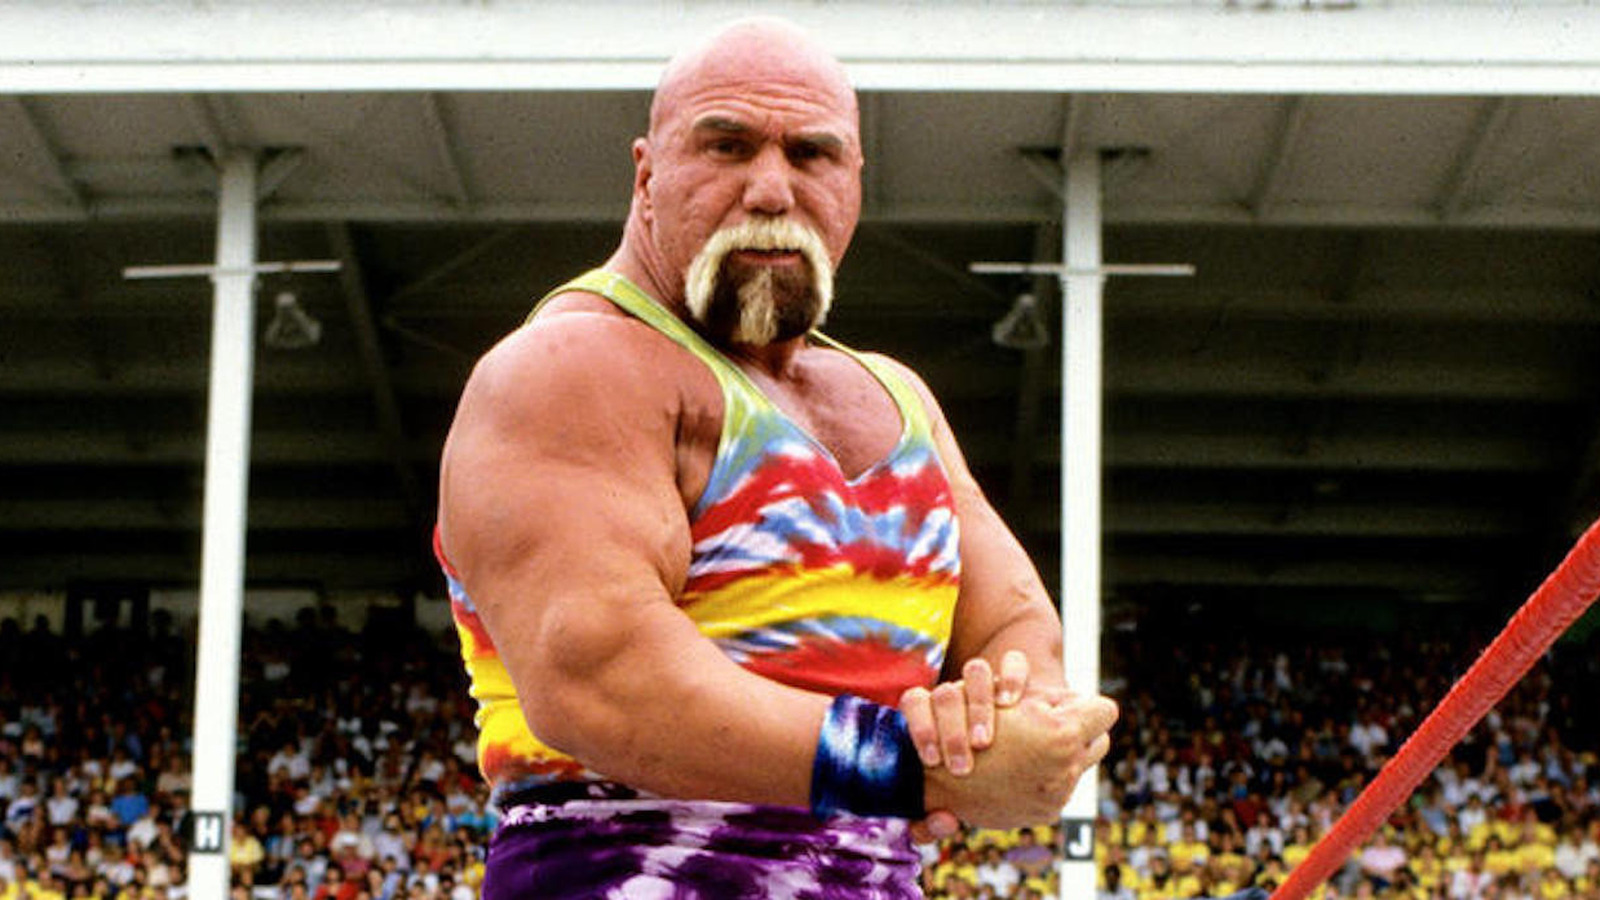 El excampeón de la WWF hospitalizado 'Superstar' Billy Graham golpeado con COVID-19